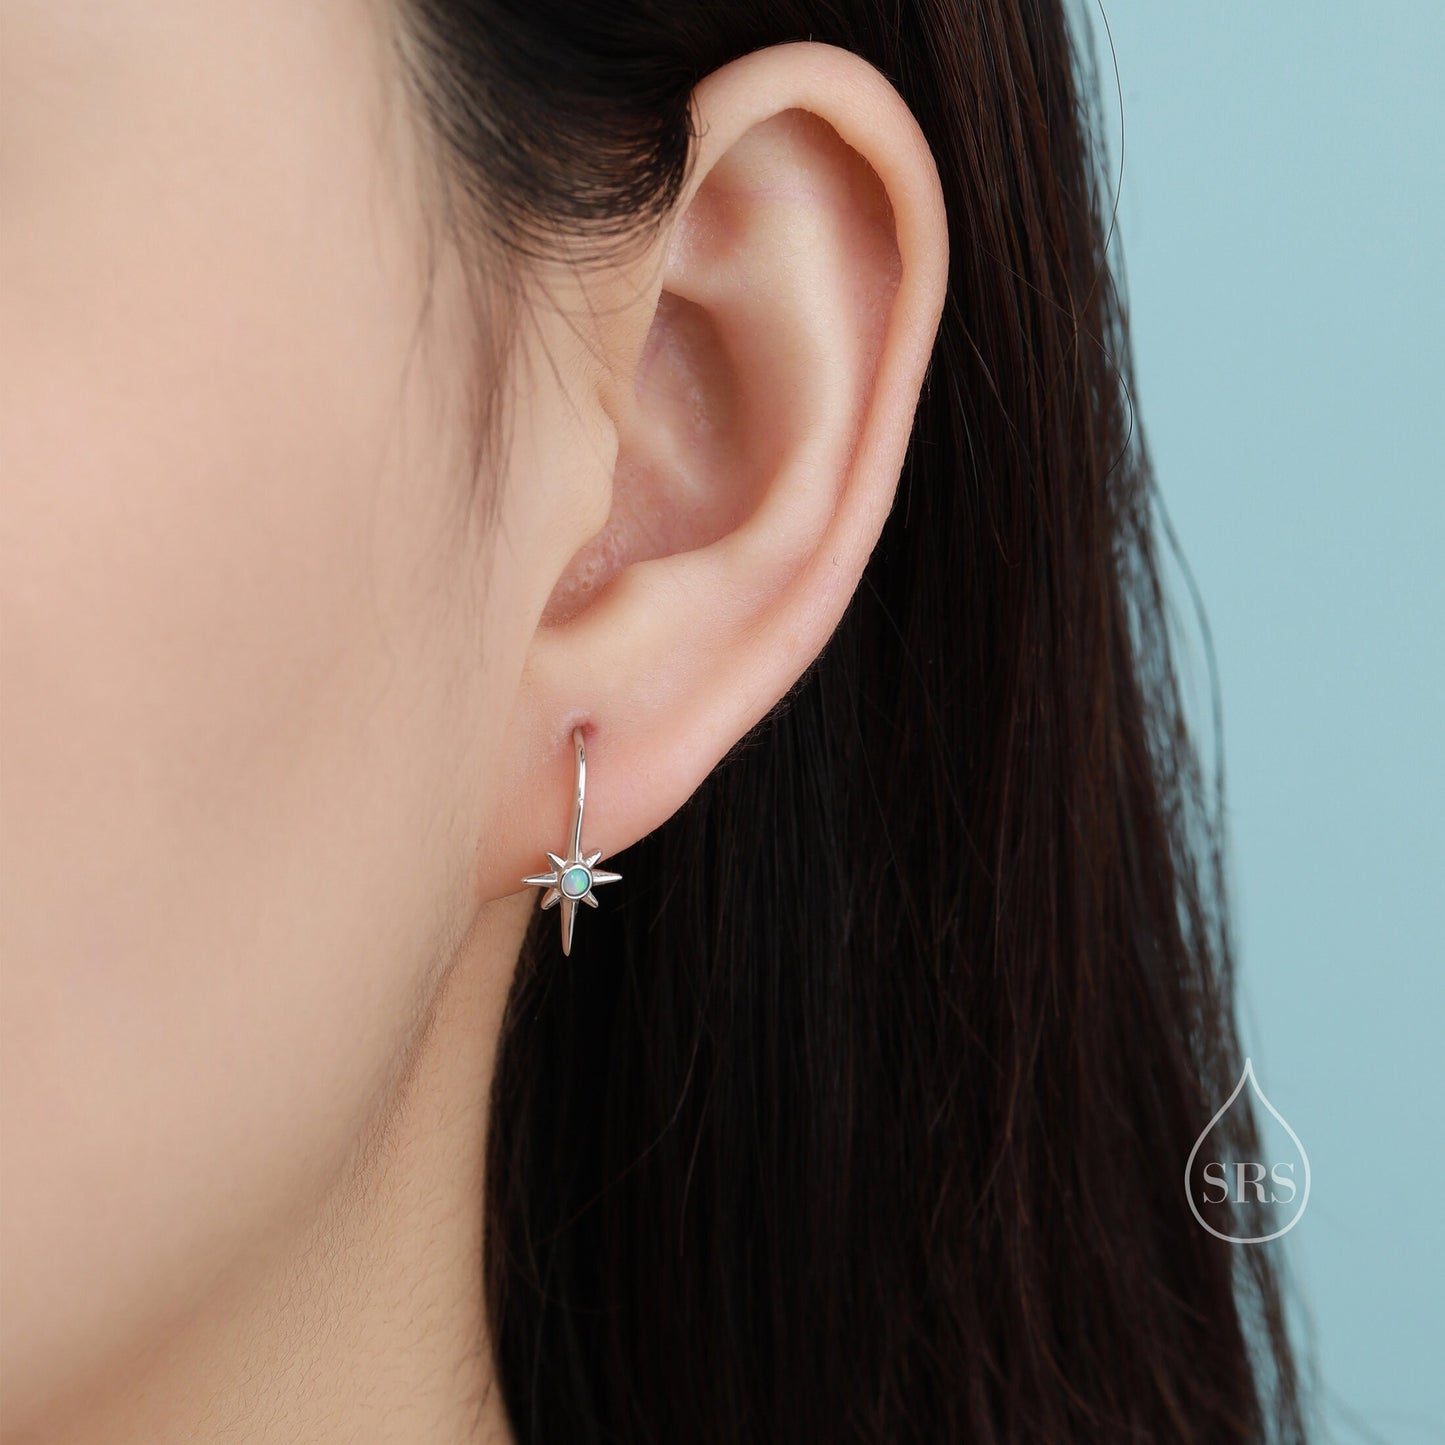 Opal Starburst Drop Hook Earrings in Sterling Silver, Blue Opal North Star Drop Earrings, Delicate Blue Opal Star Earrings, Sunburst Earring